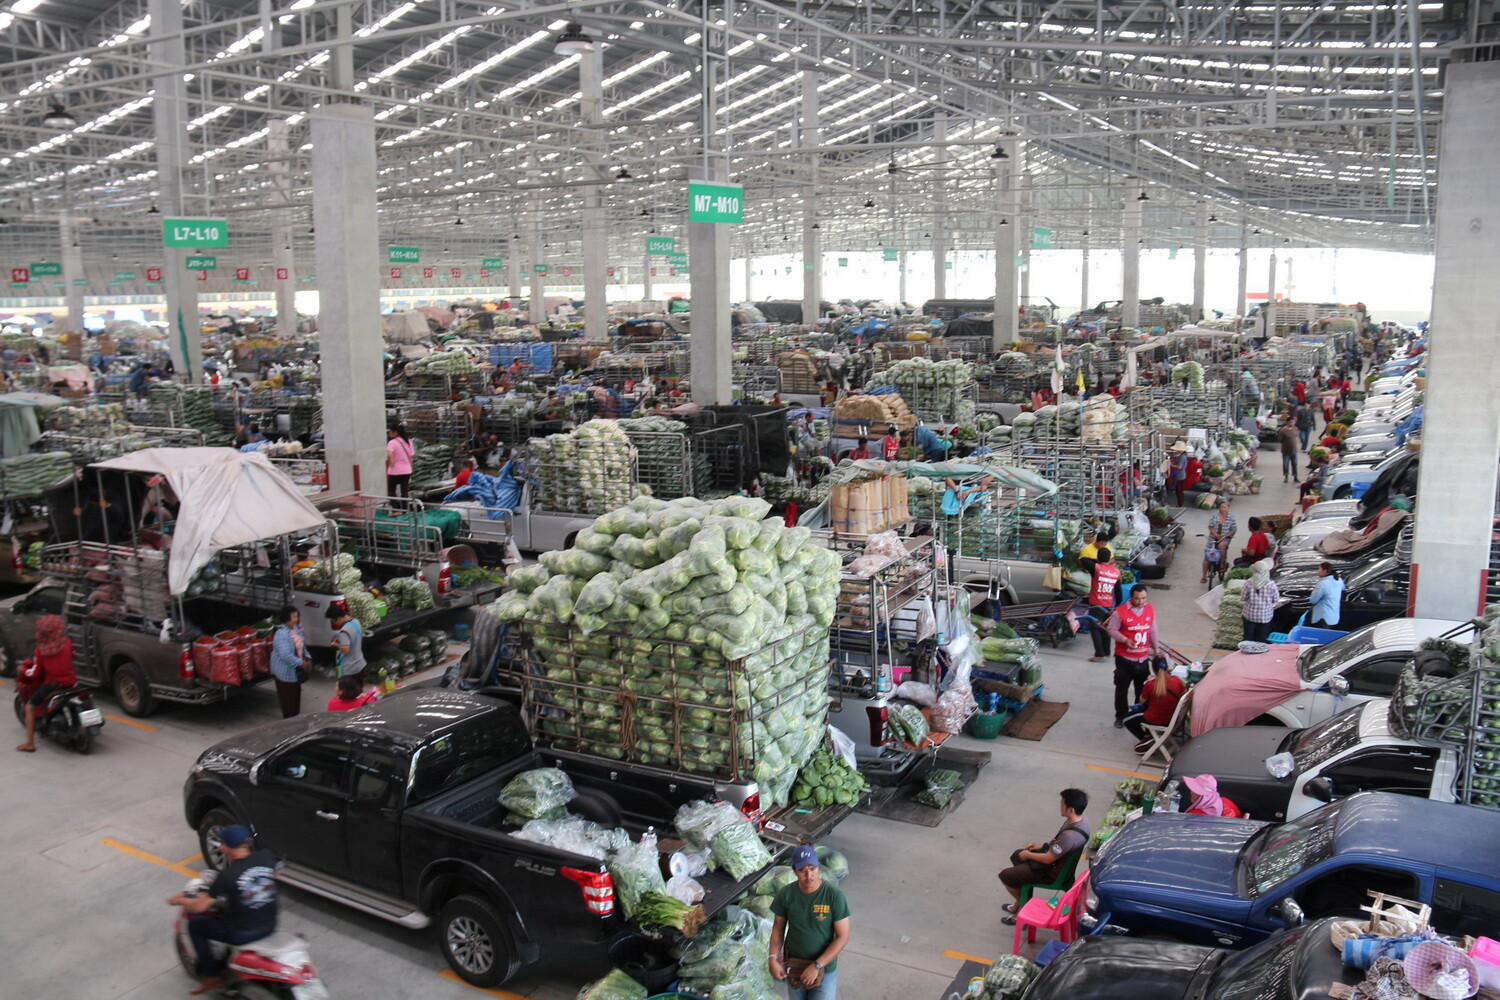 “อาคารรถผัก” ตลาดสี่มุมเมือง แหล่งซื้อขายตรงจากเกษตรกร  ย้ำเบอร์ 1 ใหญ่และทันสมัยที่สุดในไทย จัดเต็มสินค้าคุณภาพดี-ราคายุติธรรม